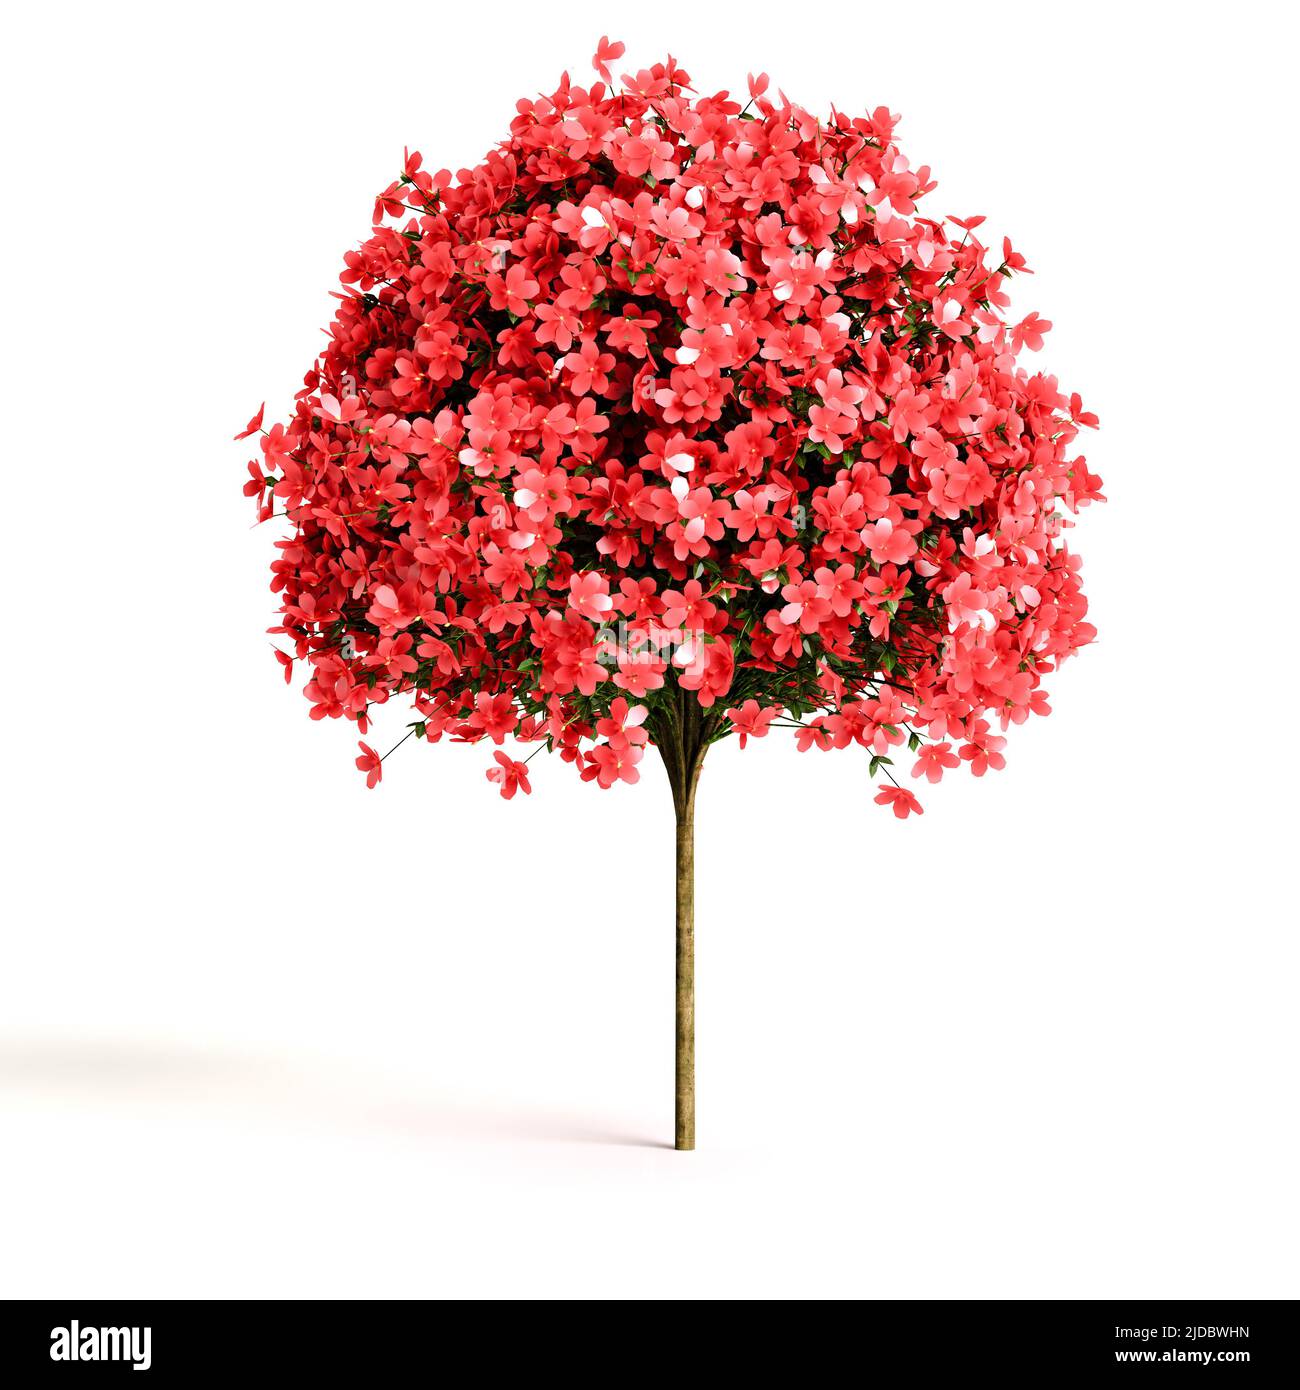 3d illustration of flowering shrubs Stock Photo